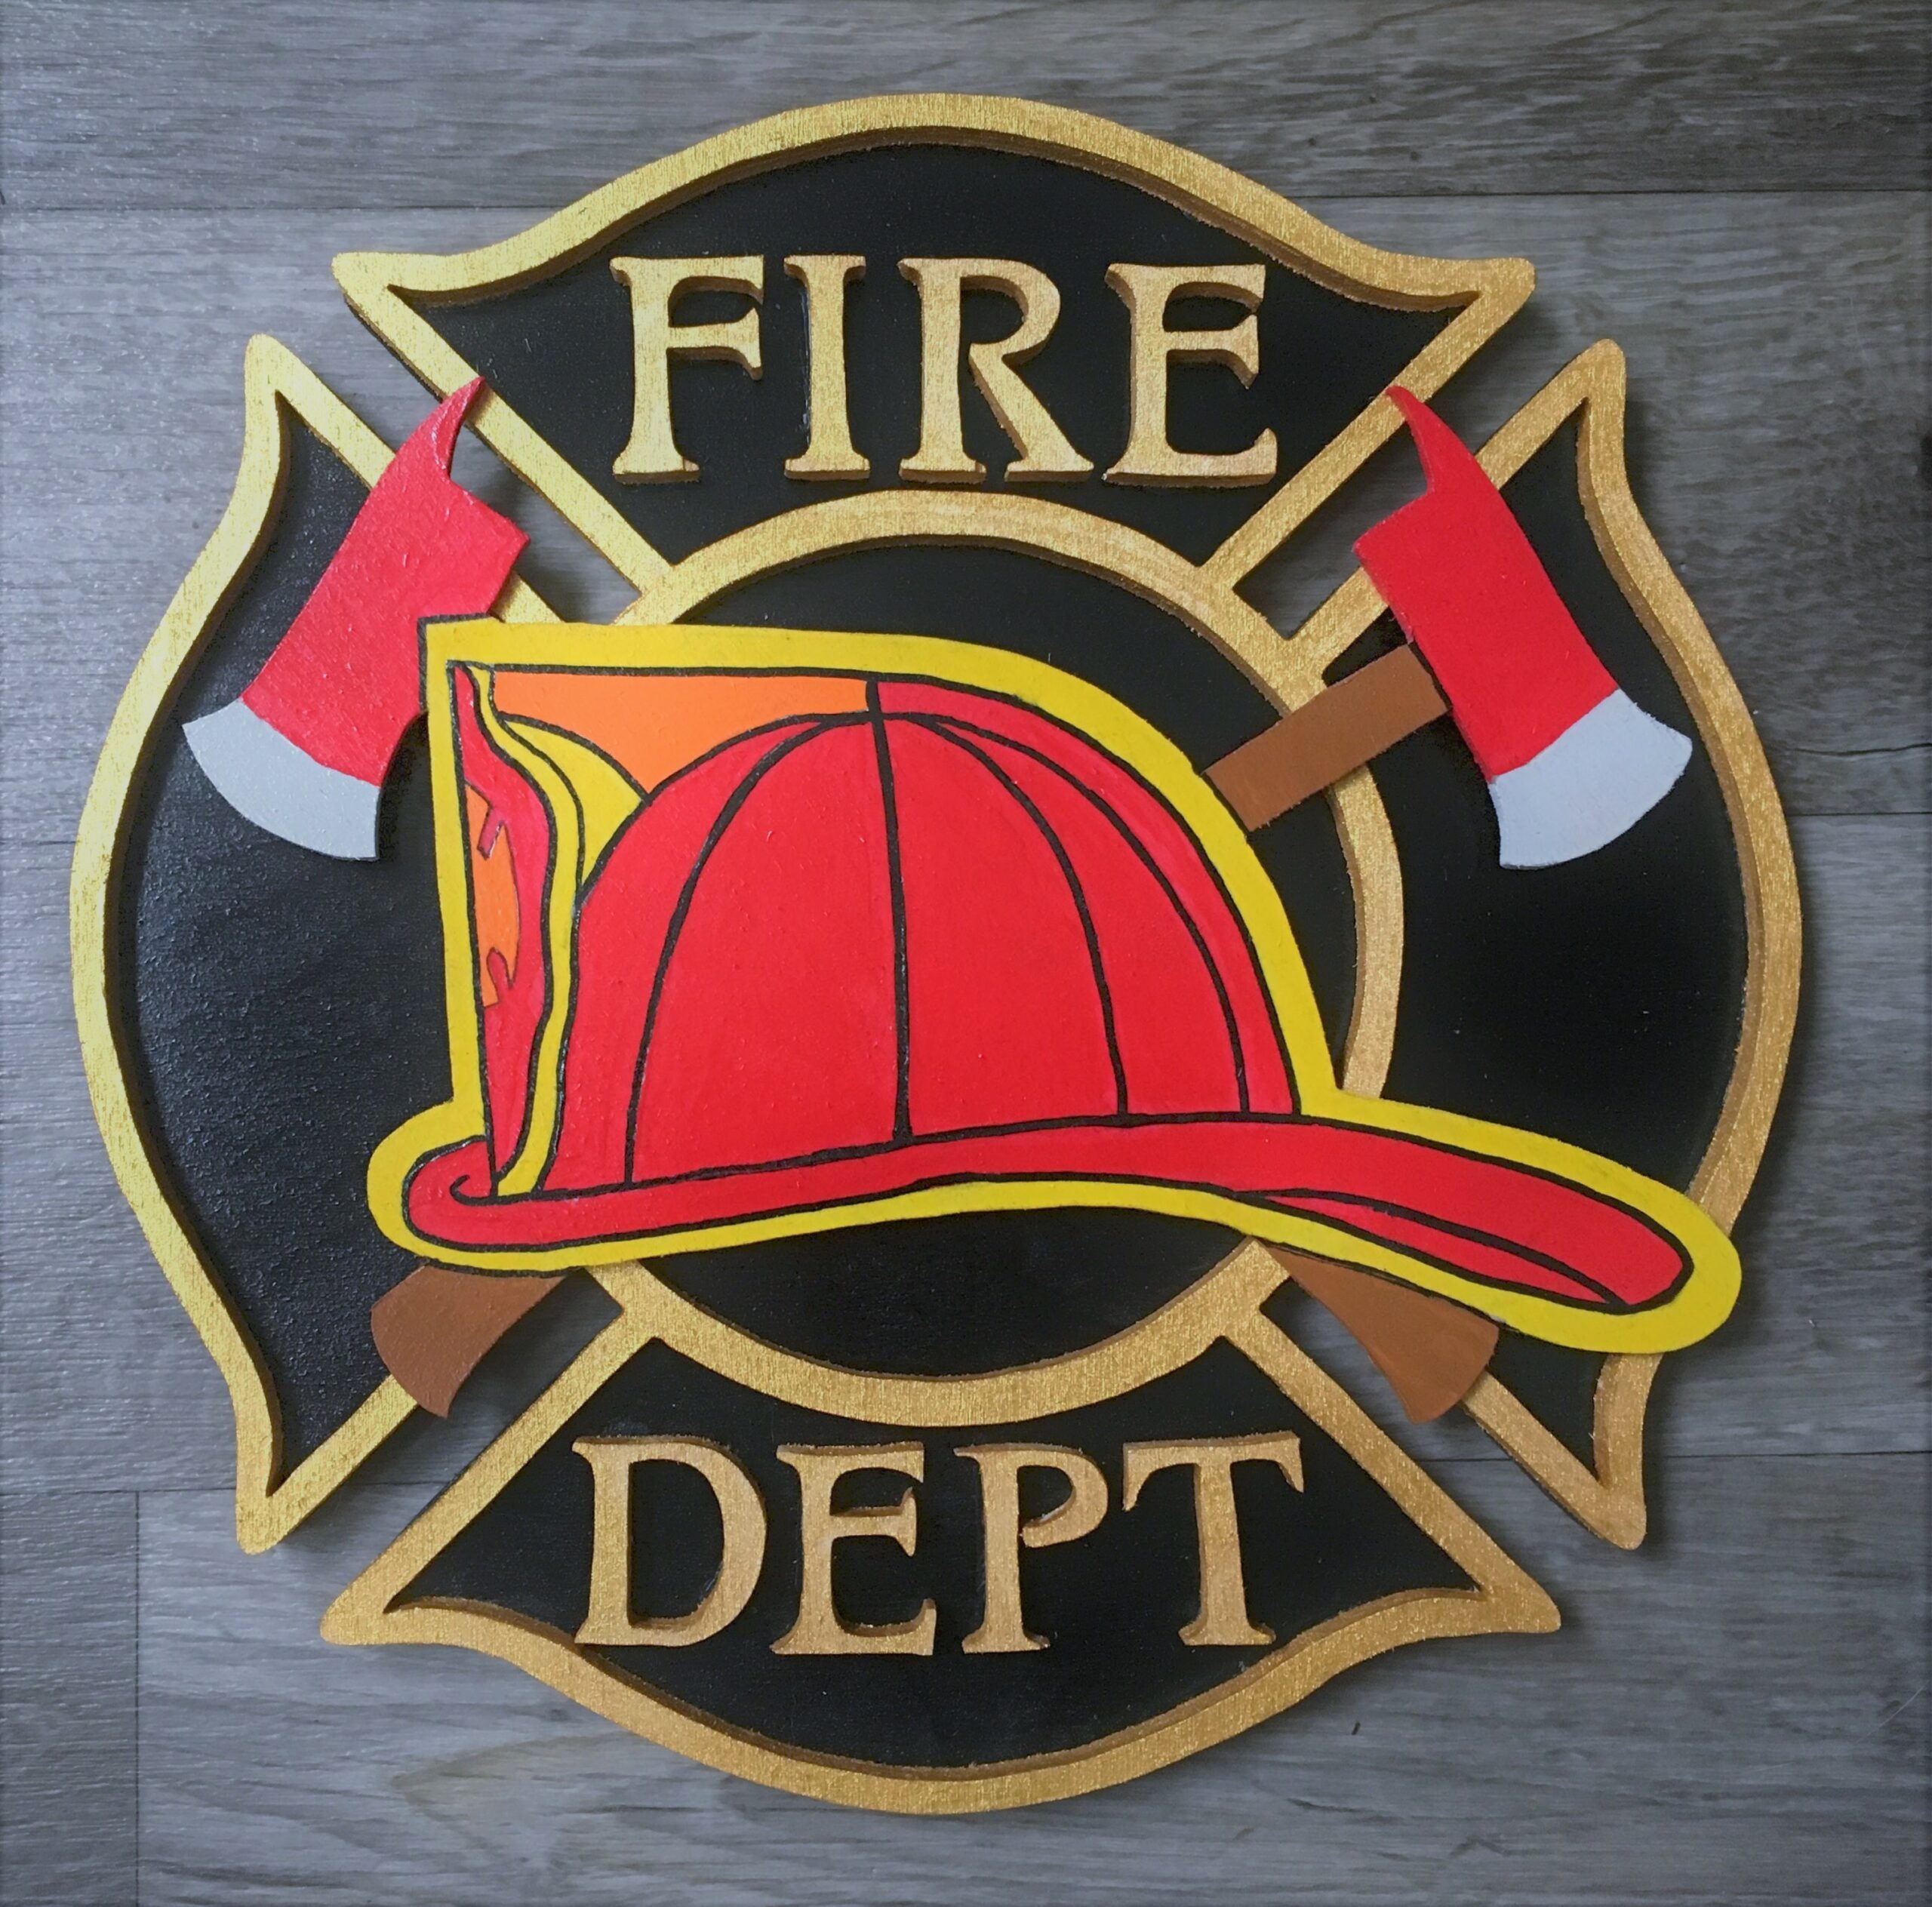 Fire Department Logos